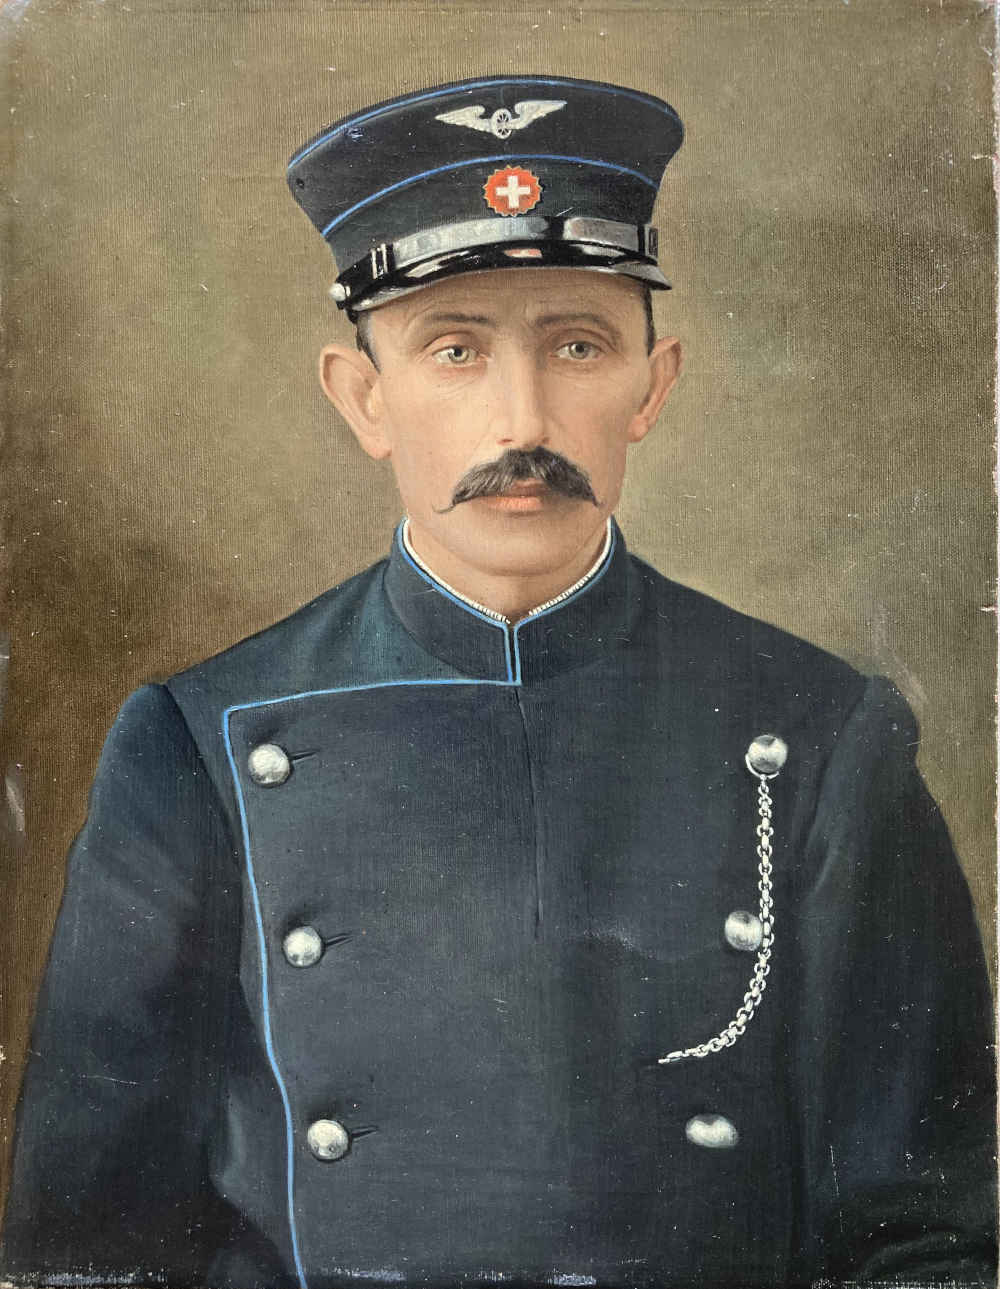 Dipinto a olio di un ferroviere, controllore FFS, bigliettaio, assistente clienti con uniforme FFS del 1902-1932.